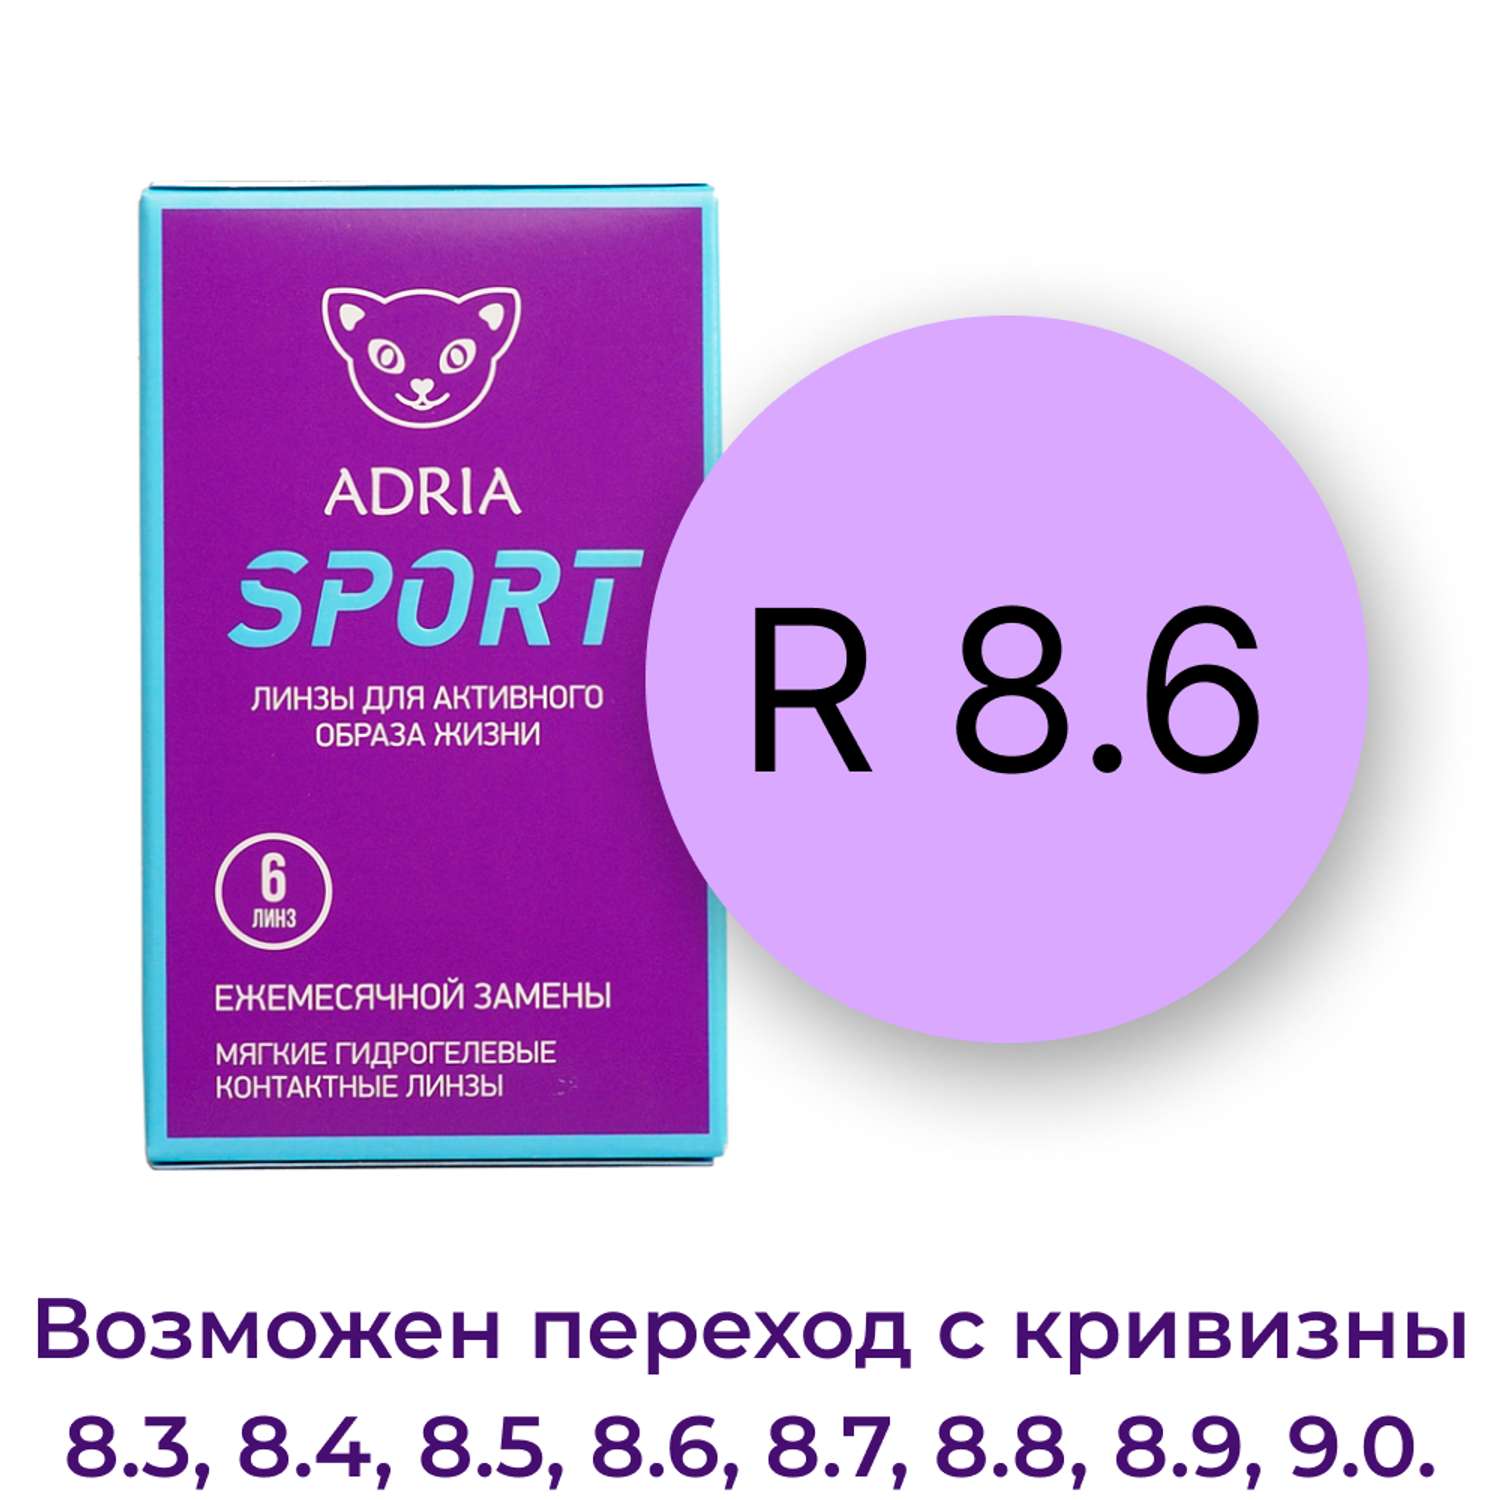 Контактные линзы ADRIA Sport 6 линз R 8.6 -2.25 - фото 3